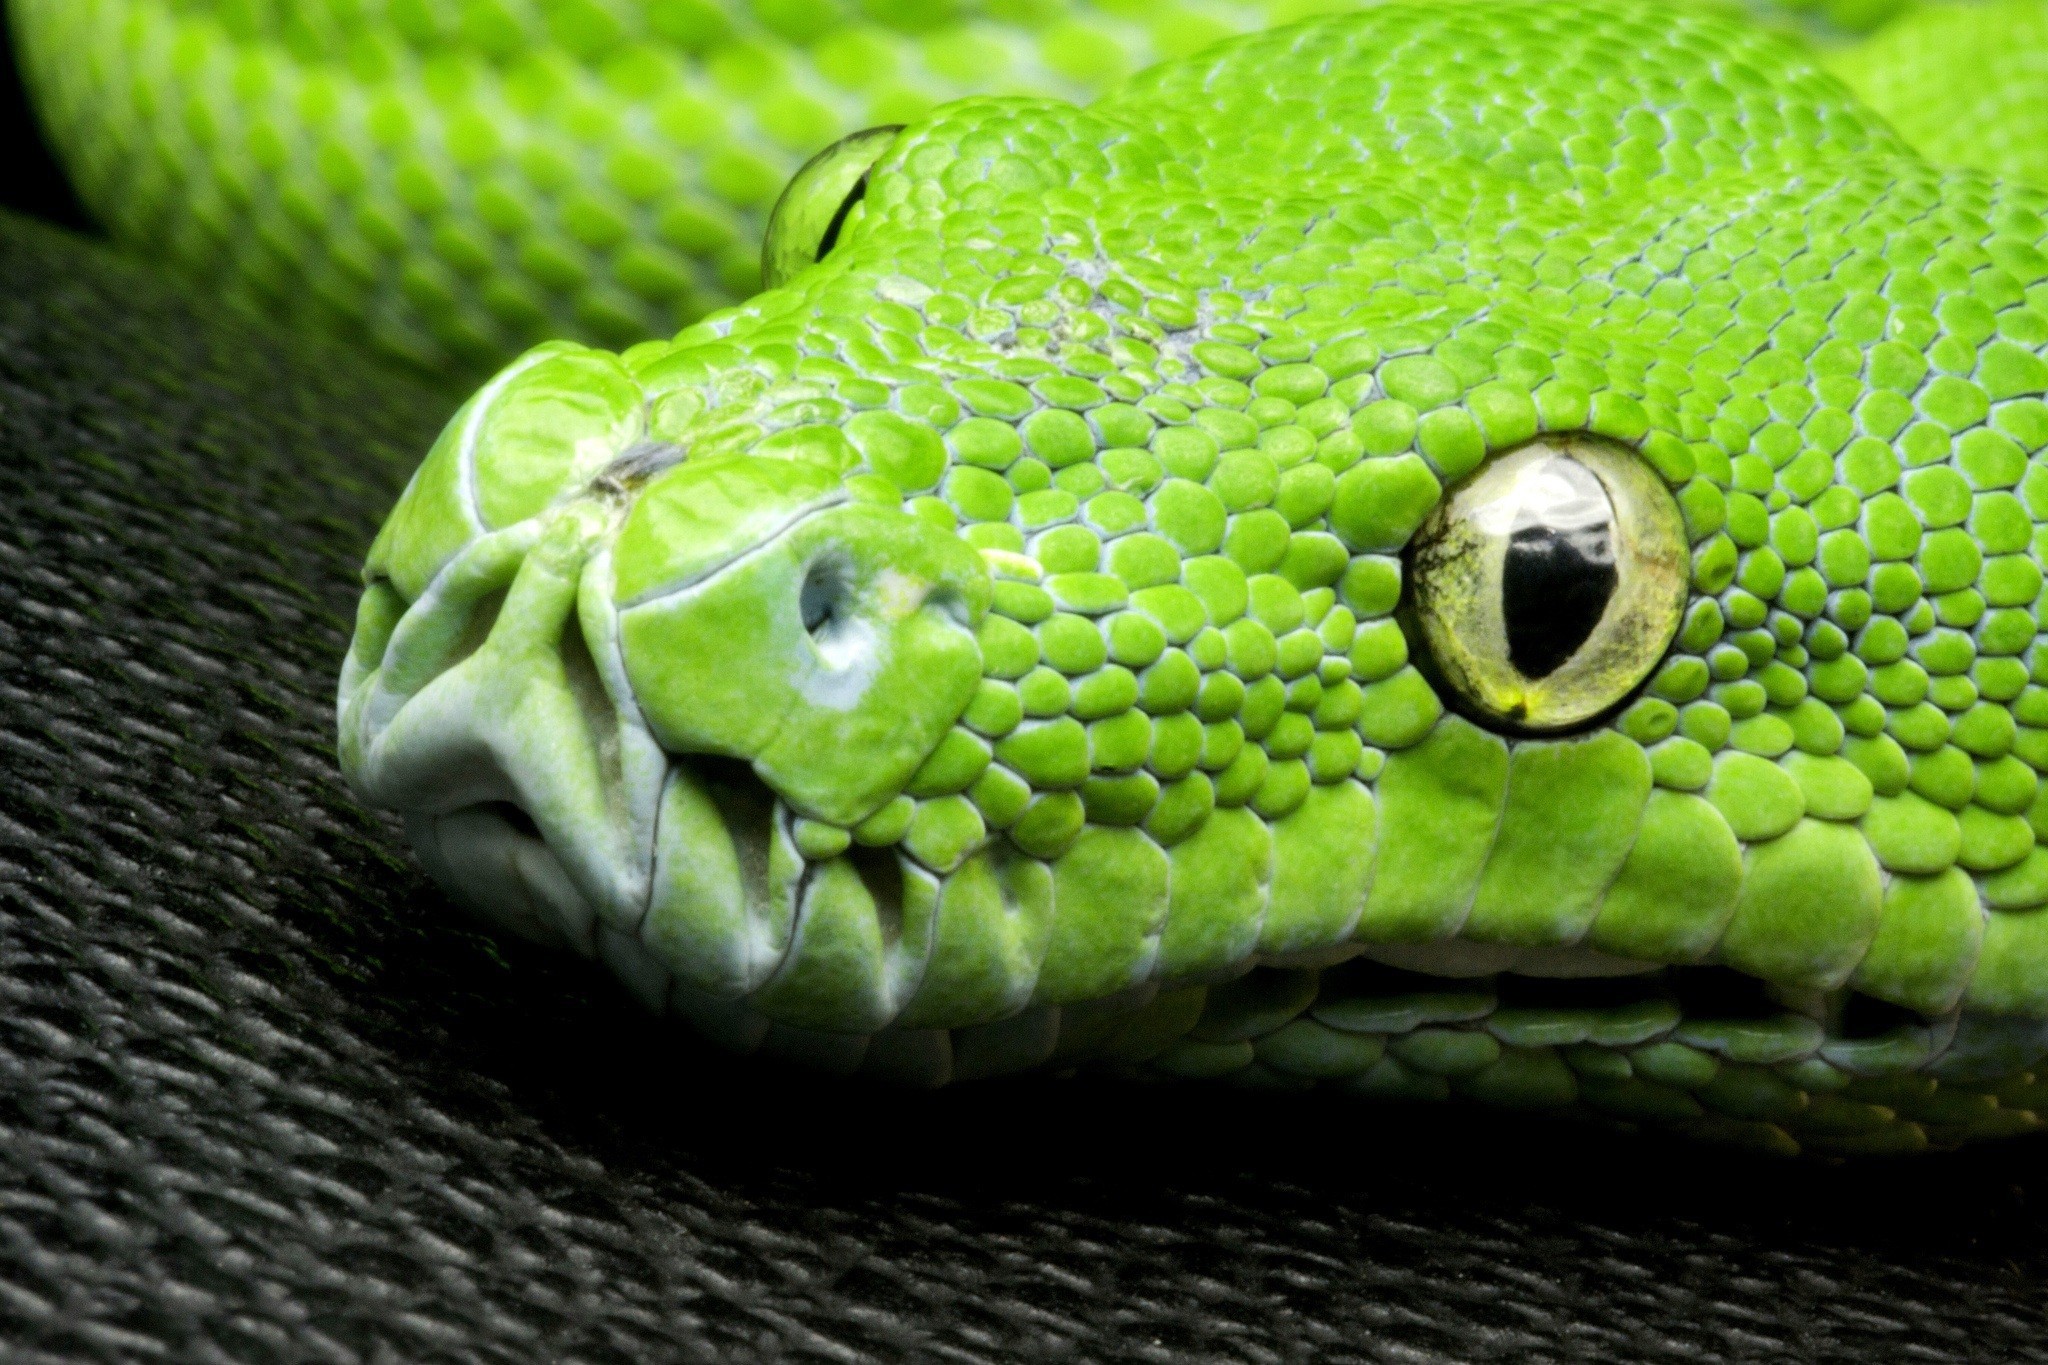 General 2048x1365 nature animals yellow eyes snake closeup green skin pattern reptiles wildlife